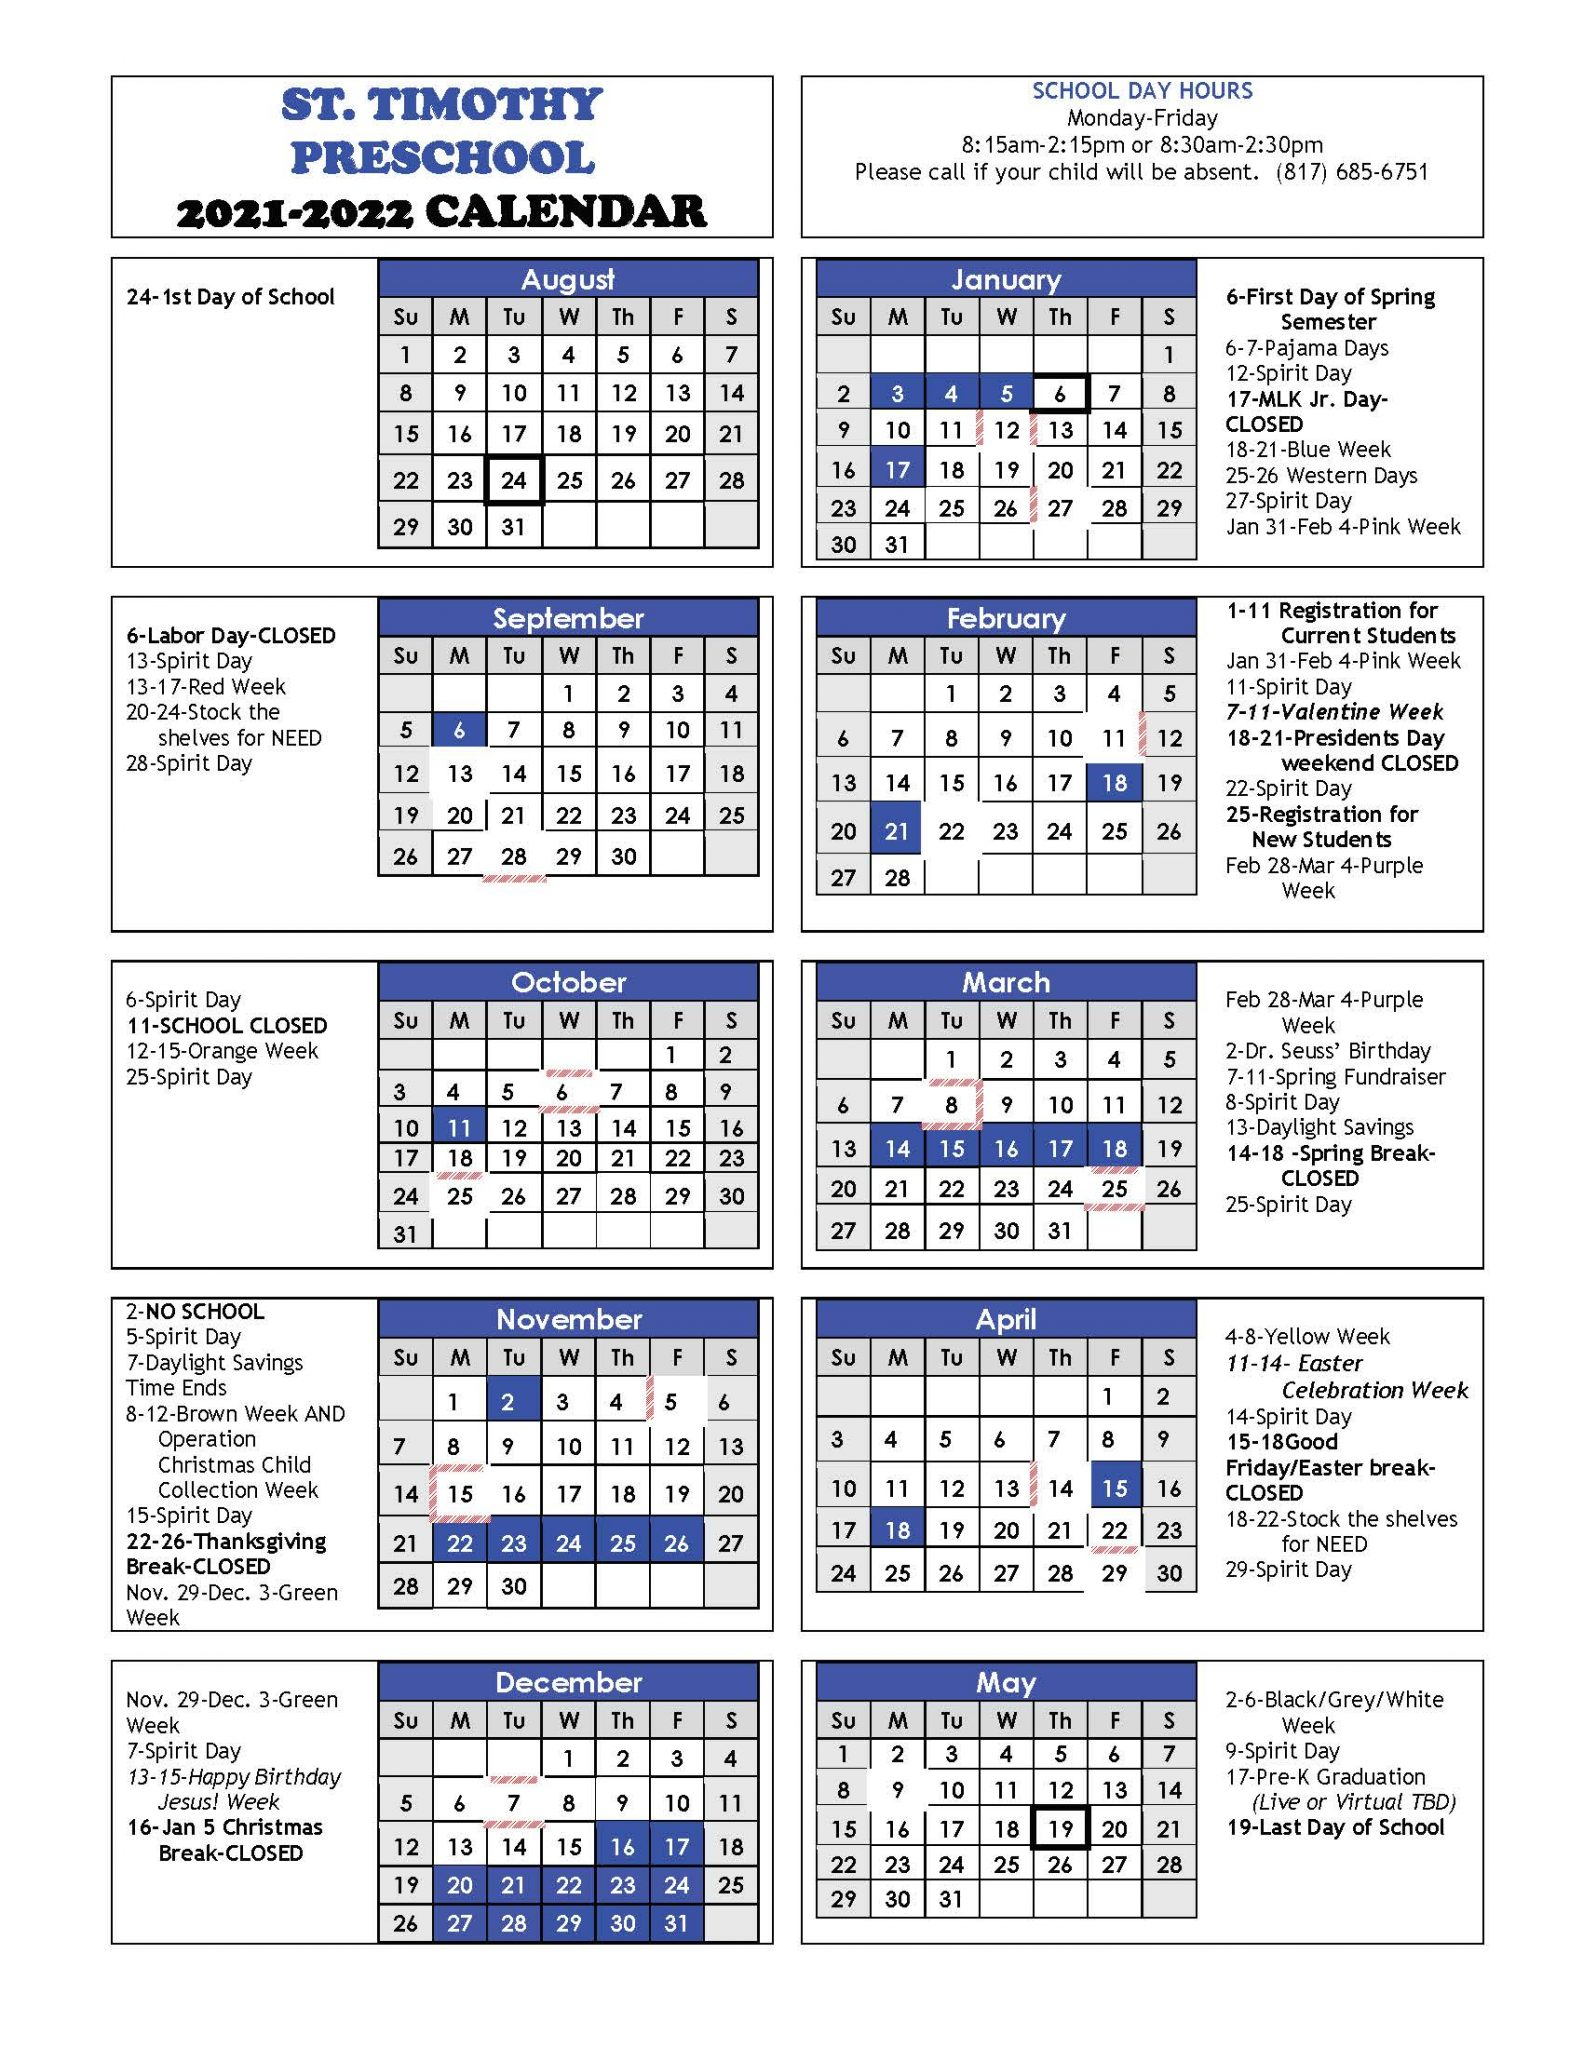 2021 - 2022 School Year Calendar - St. Timothy Preschool